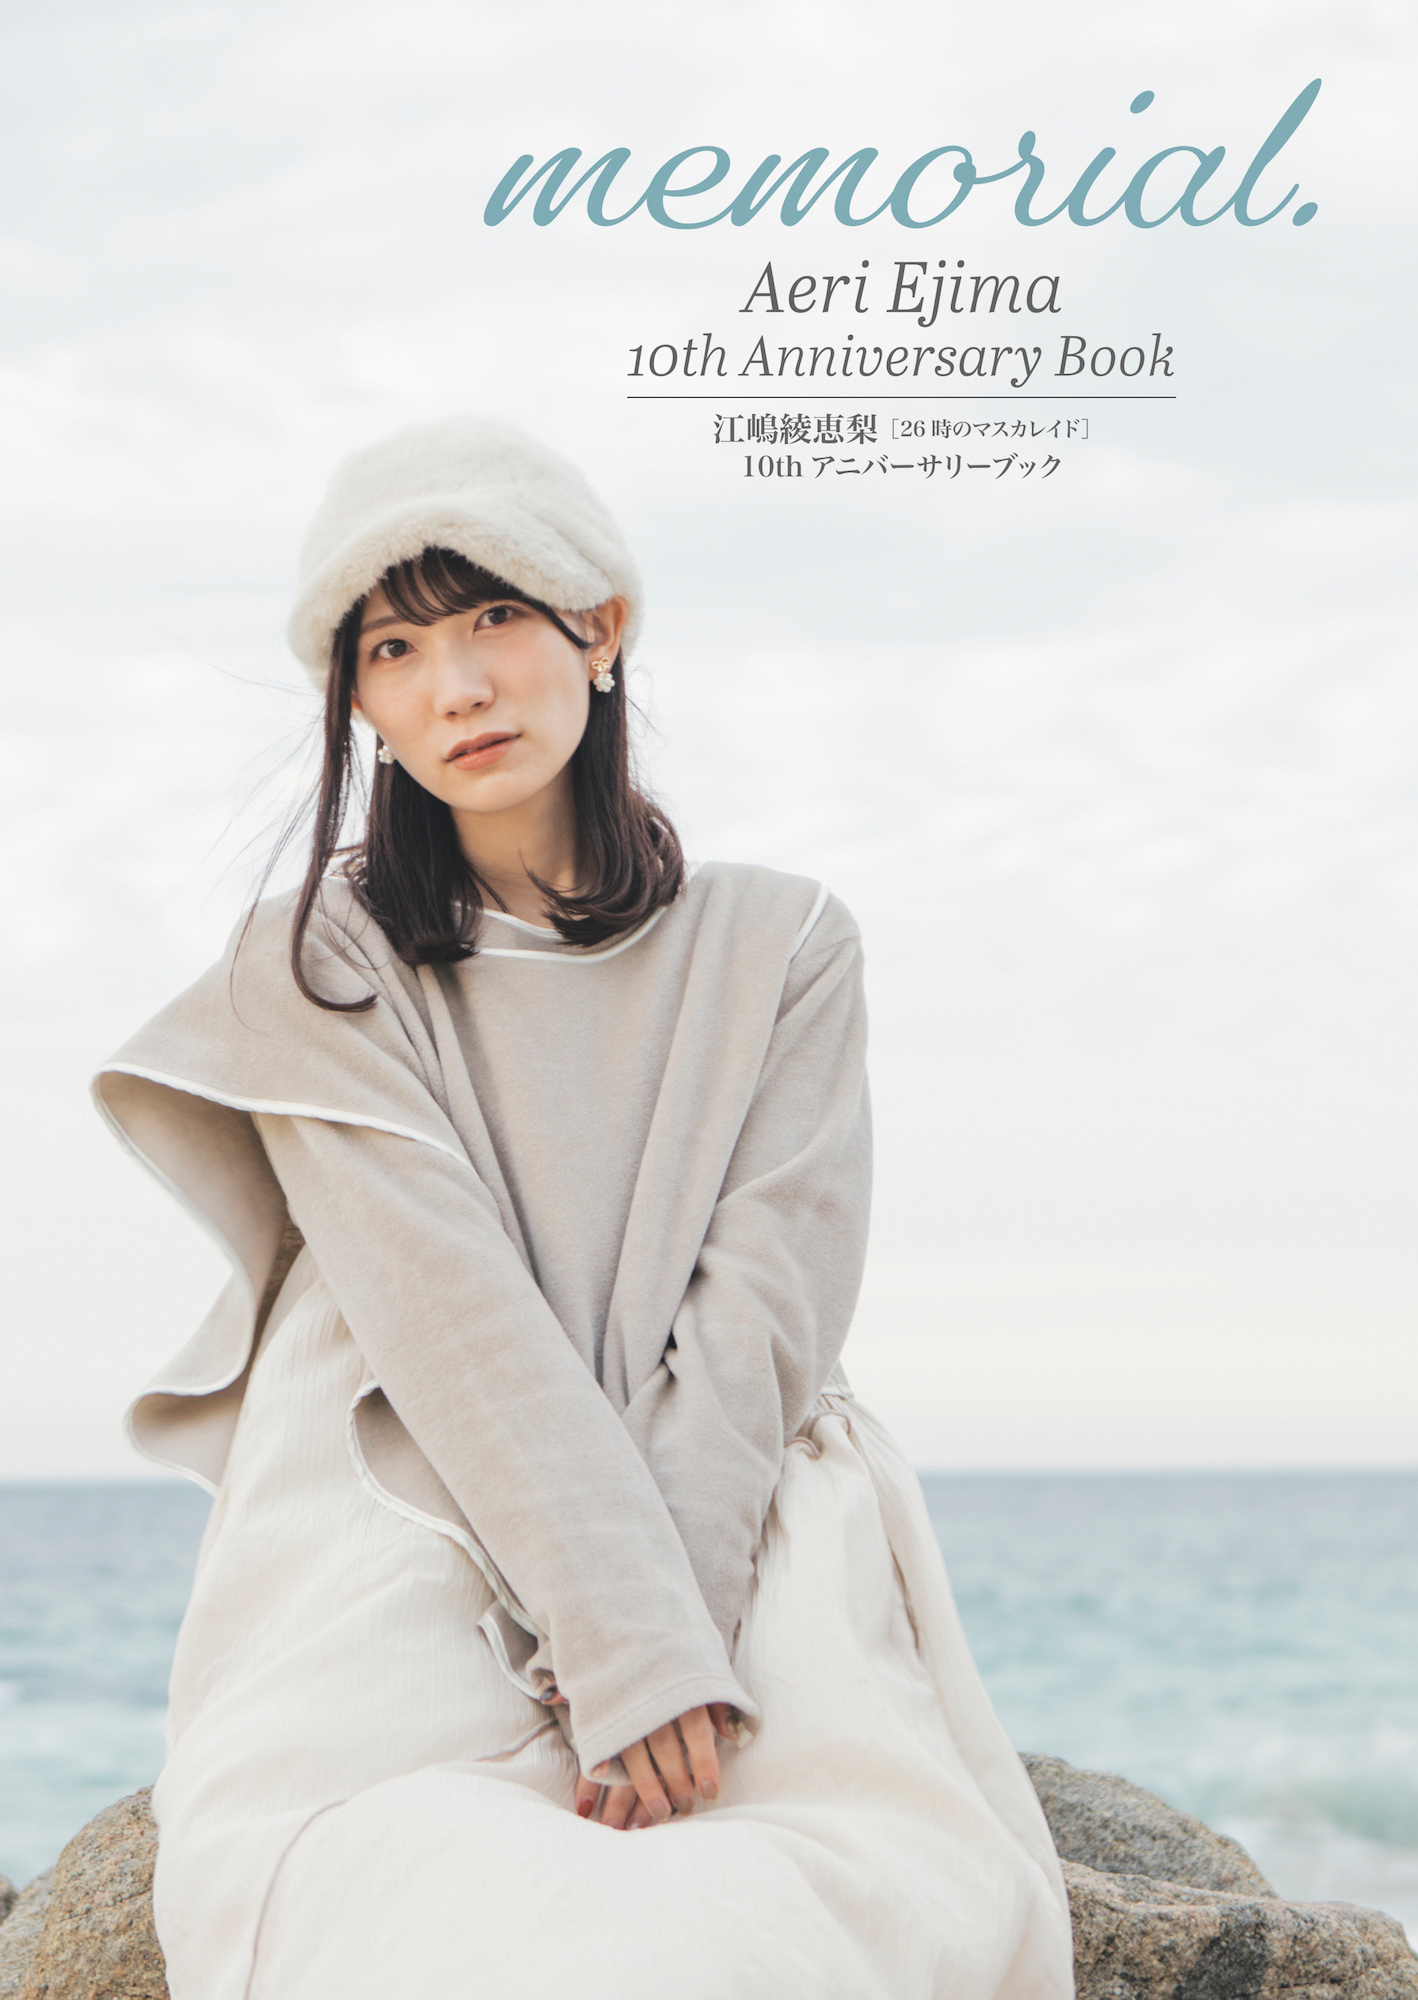 Aeri Ejima 10th Anniversary Book 『memorial.』楽天ブックス